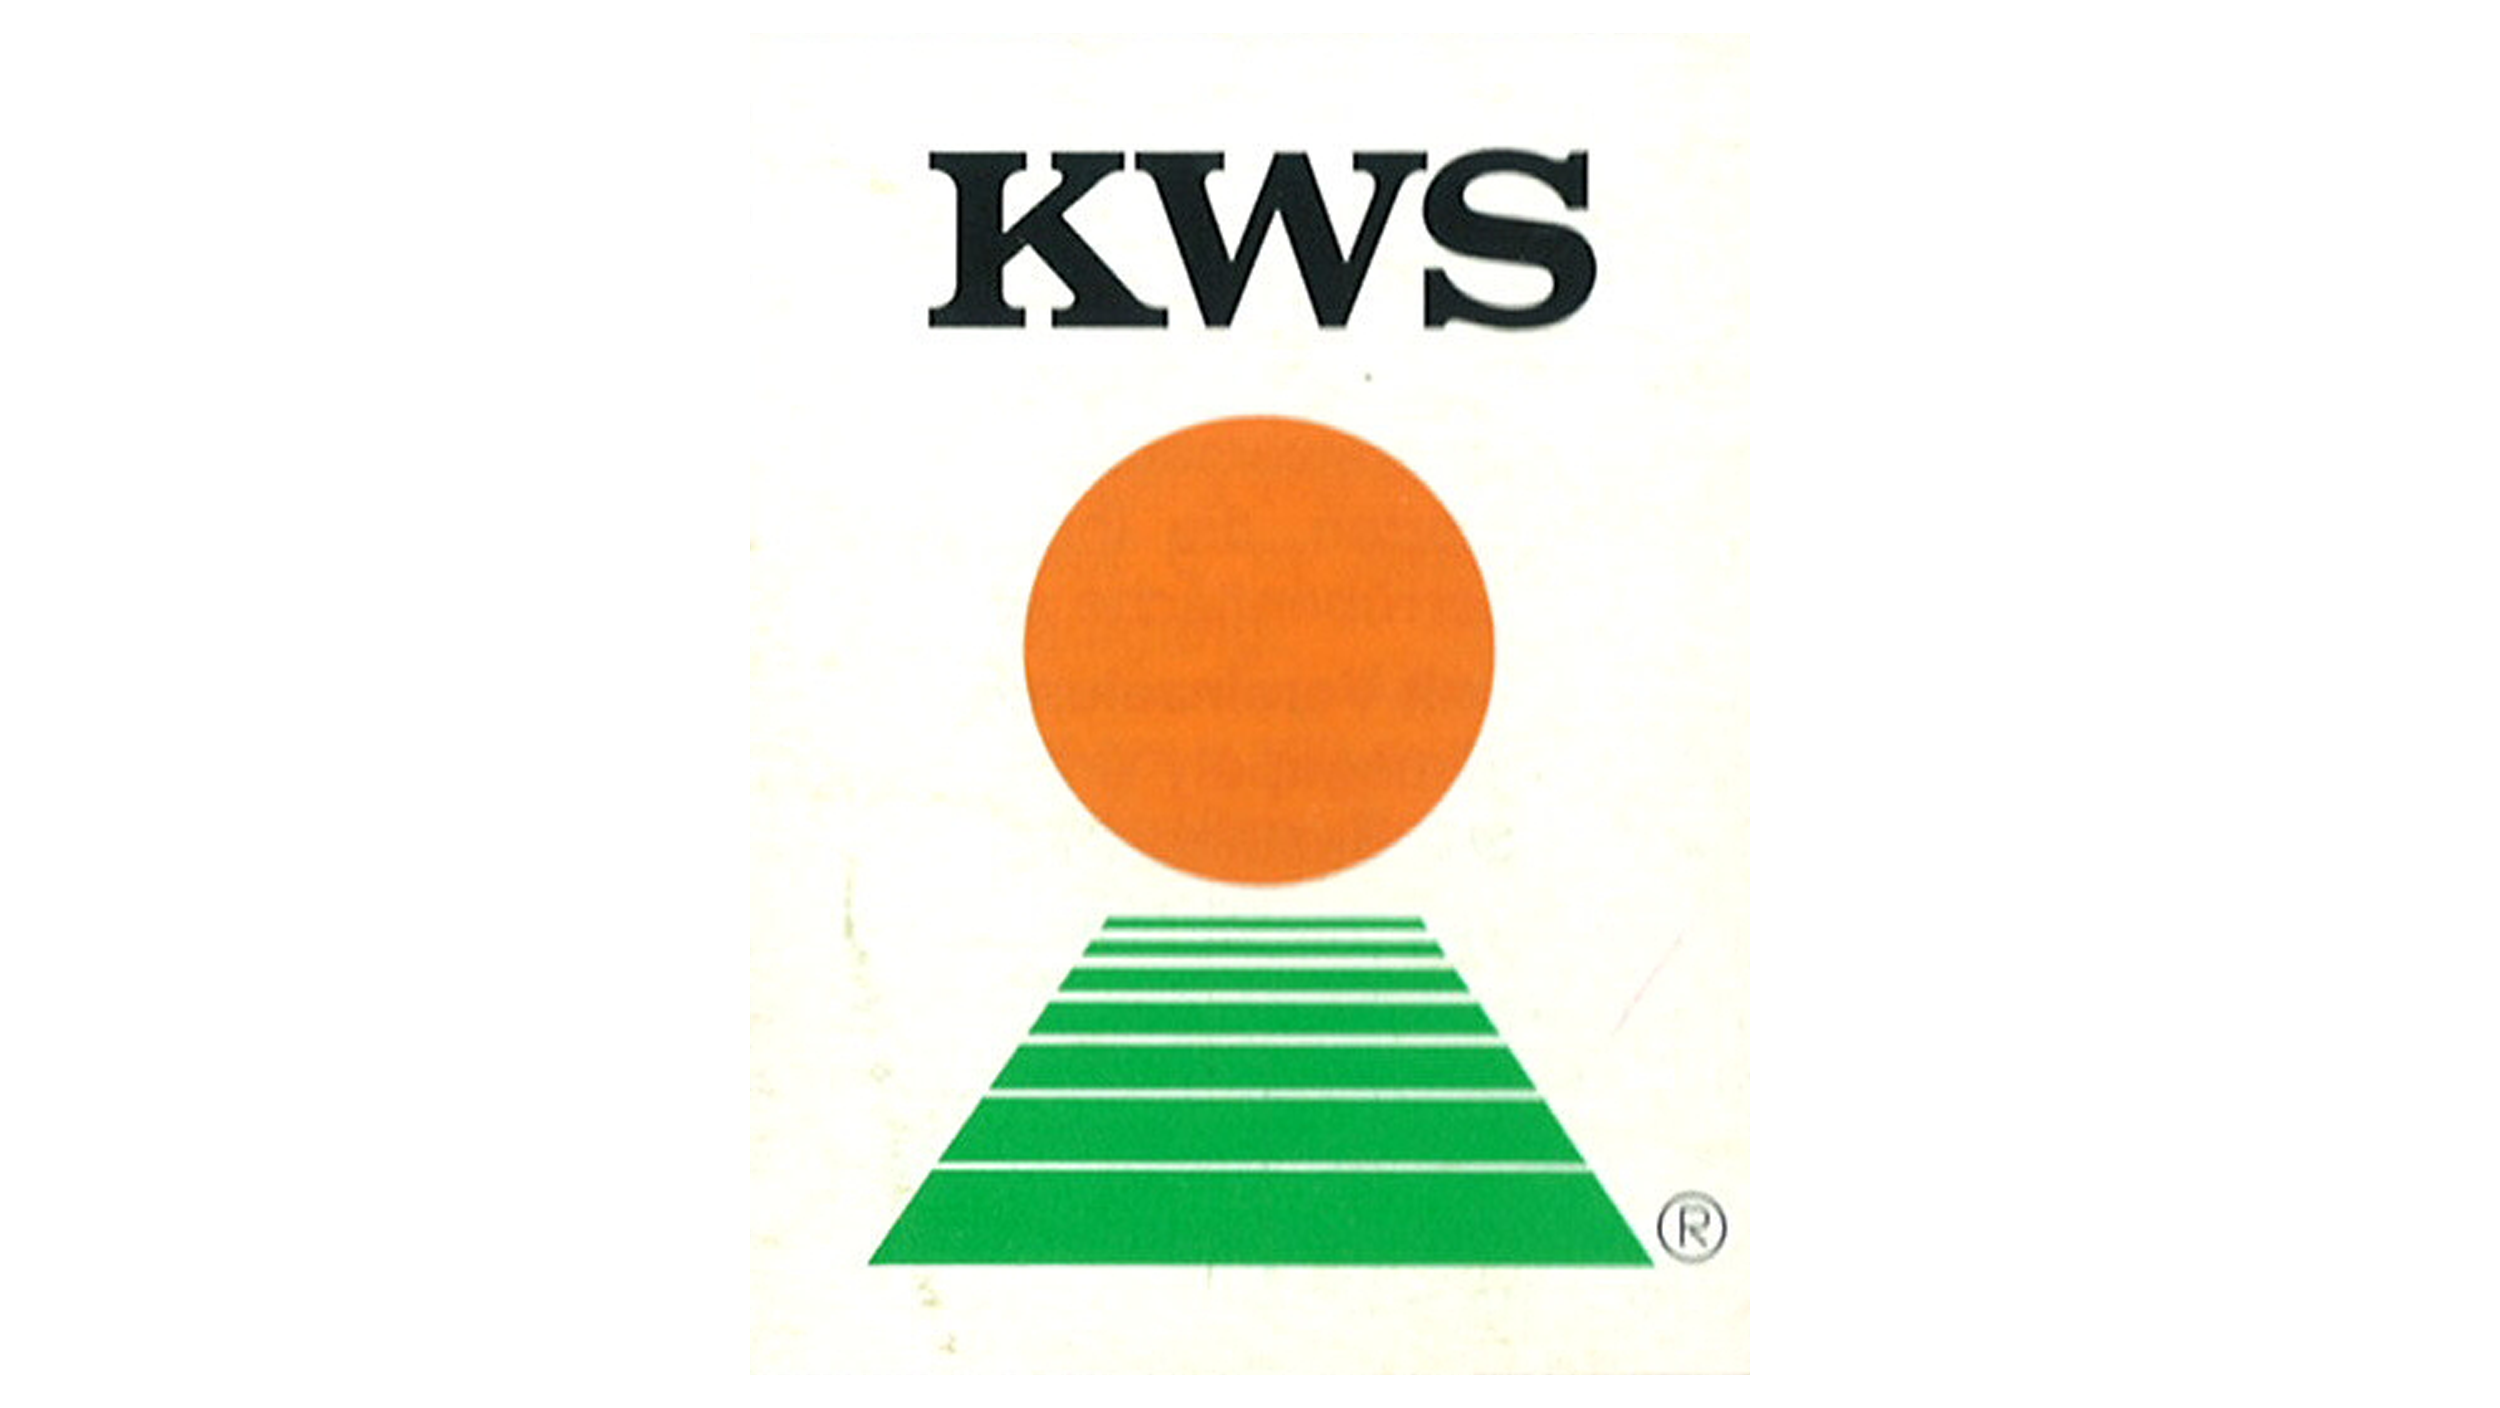 Logo KWS od 1972 roku